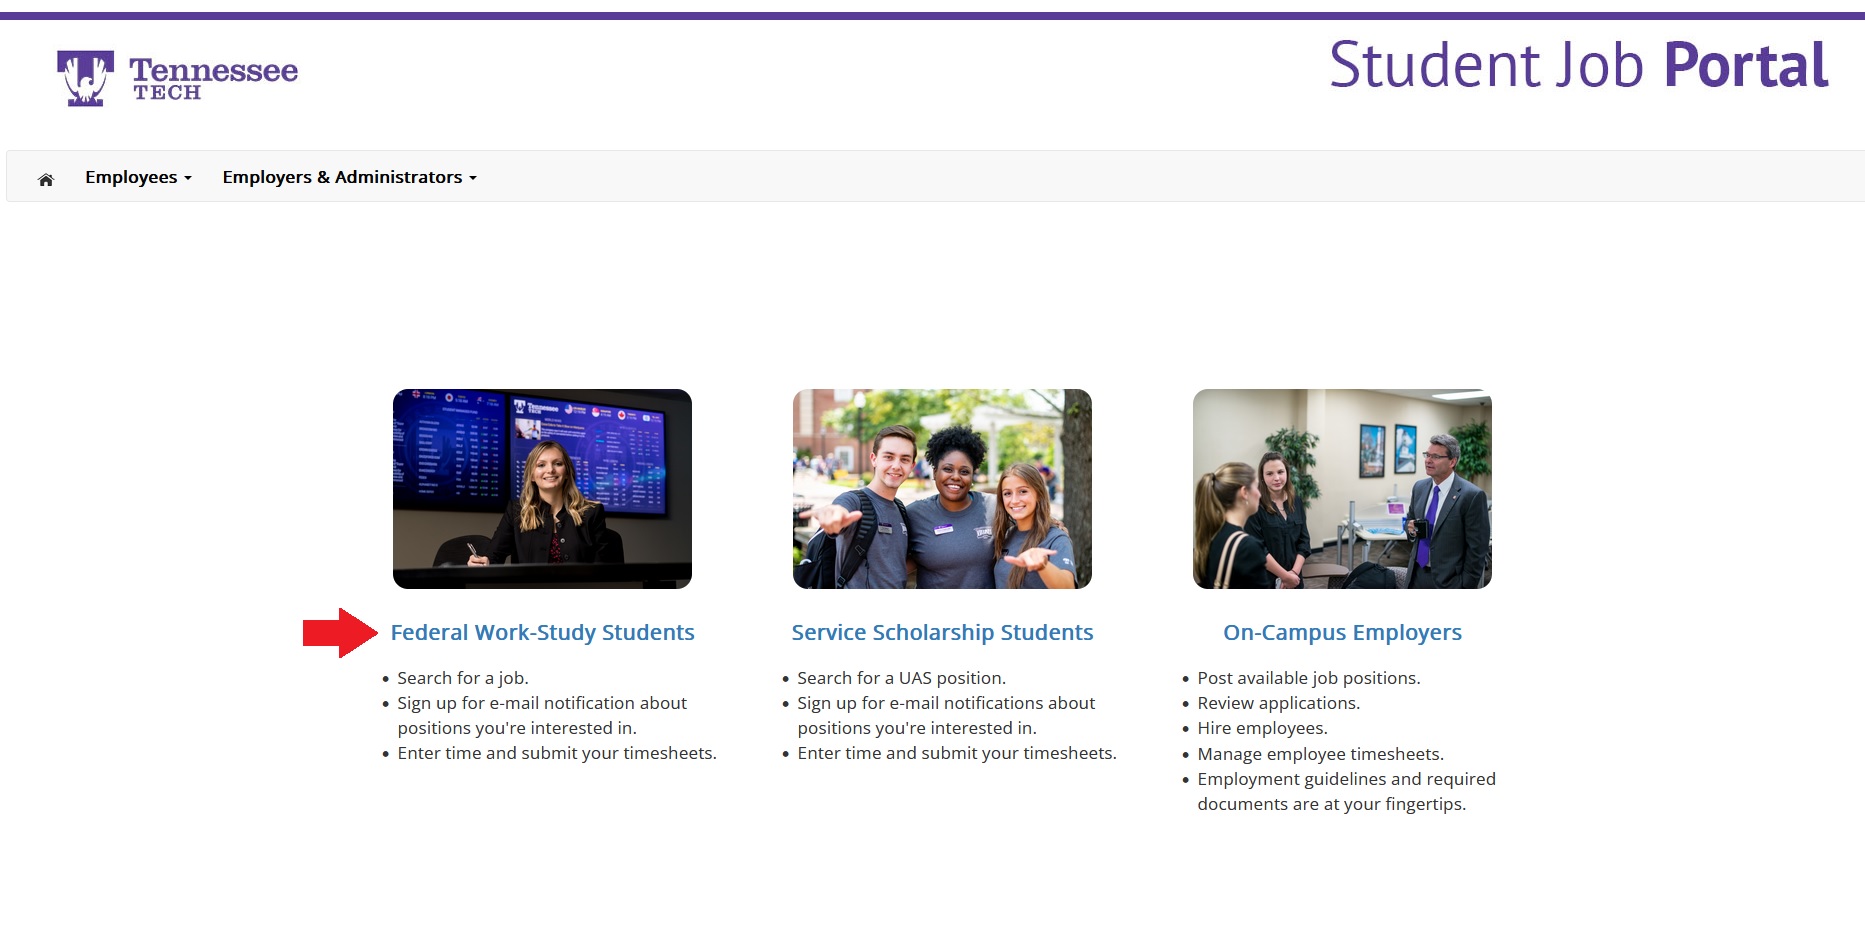 Image of Student Job Portal Home Page